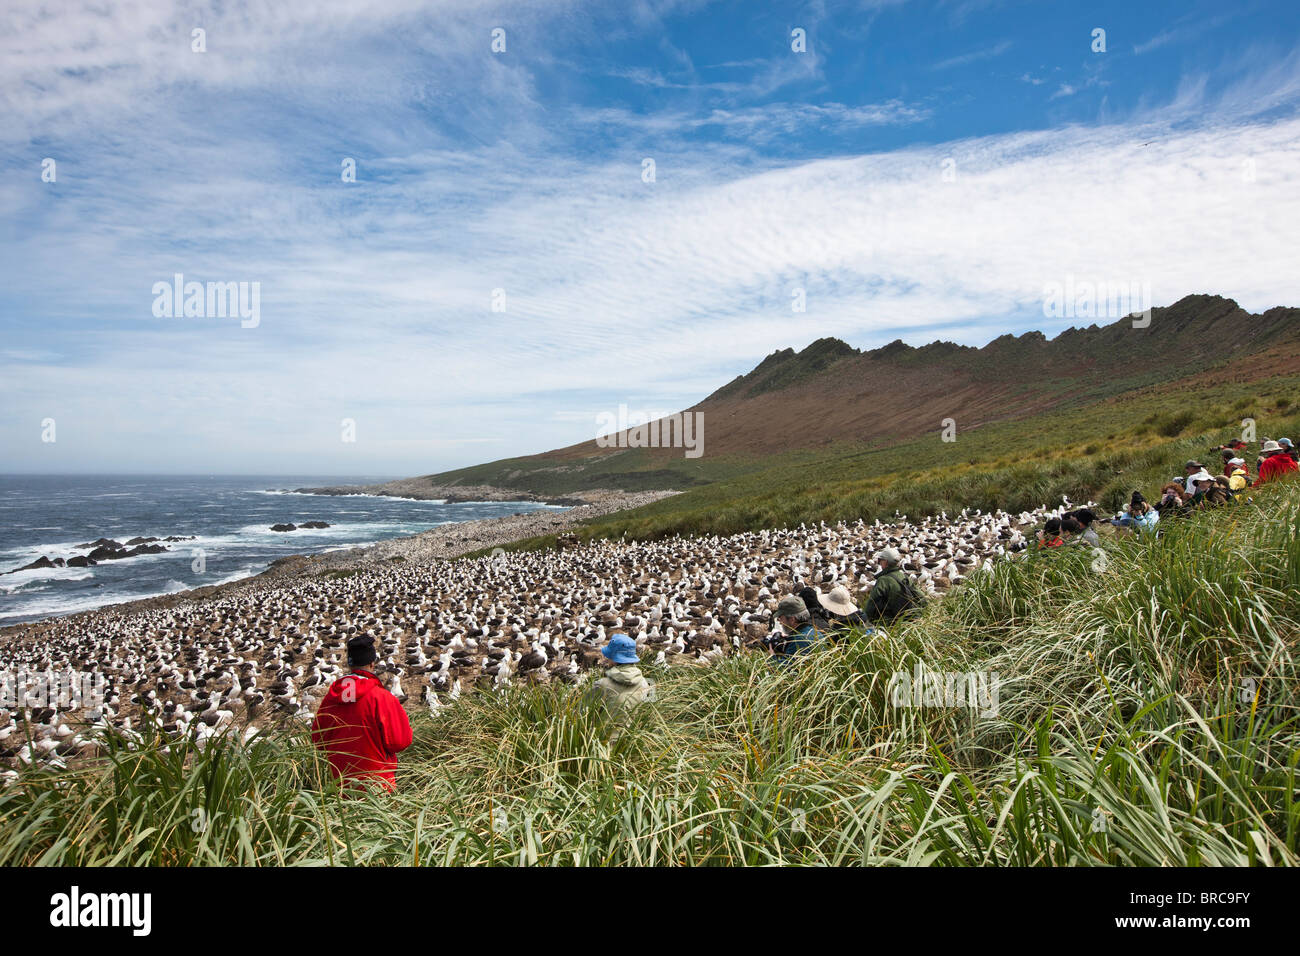 Photographes lors d'une colonie d'albatros à sourcils noirs. Steeple Jason Island, Îles Falkland Banque D'Images